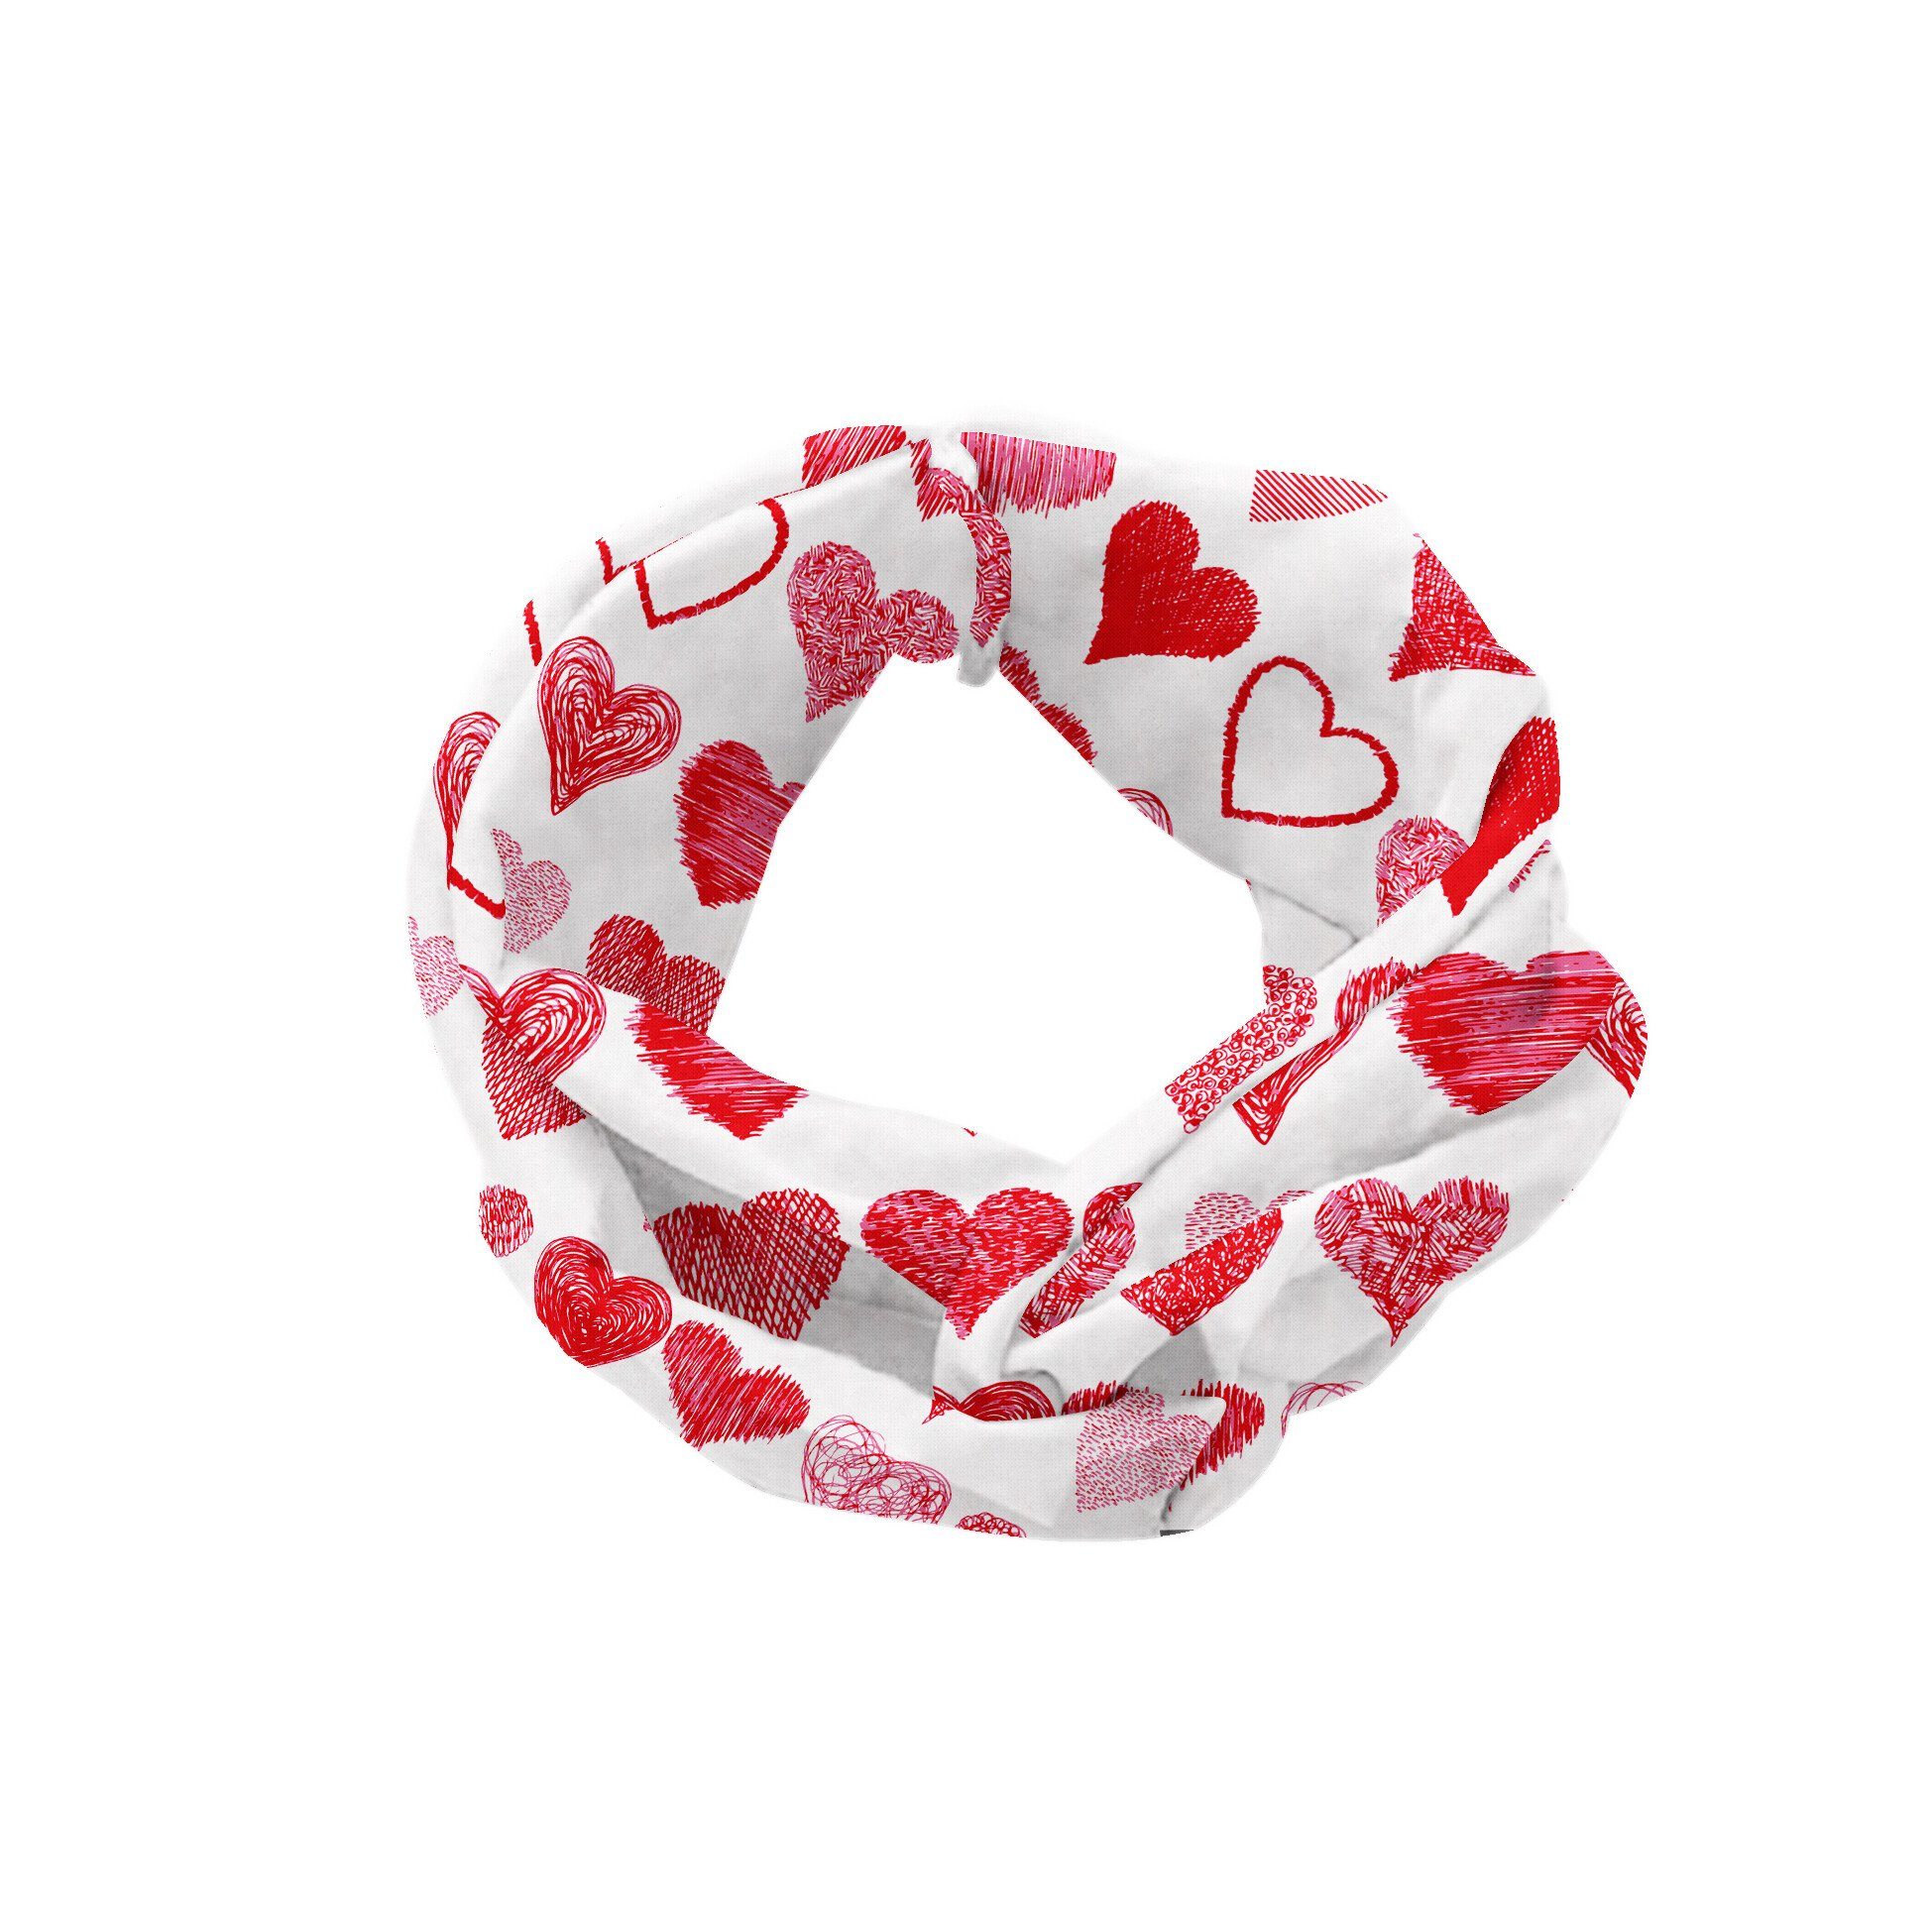 Abakuhaus Stirnband Elastisch Valentinstag accessories Angenehme Romantische Herzen alltags und